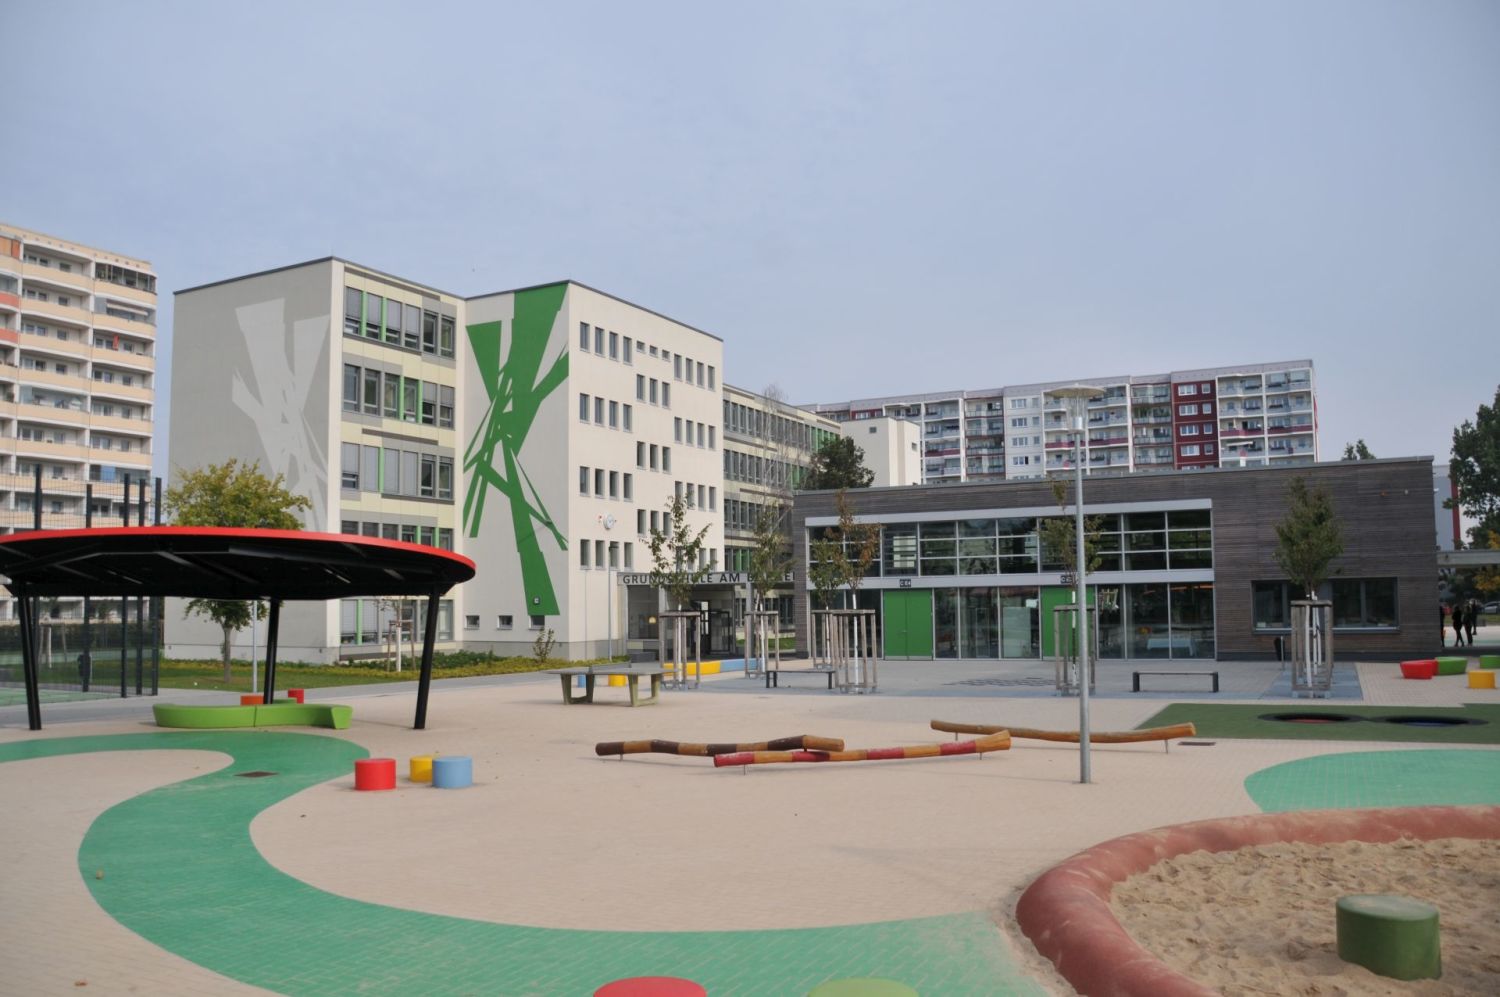 Mehrfache Übergabe Grundschule am Bürgerpark - Schulgebäude, Verbinder, Pausenhof nach der abgeschlossenen Sanierung